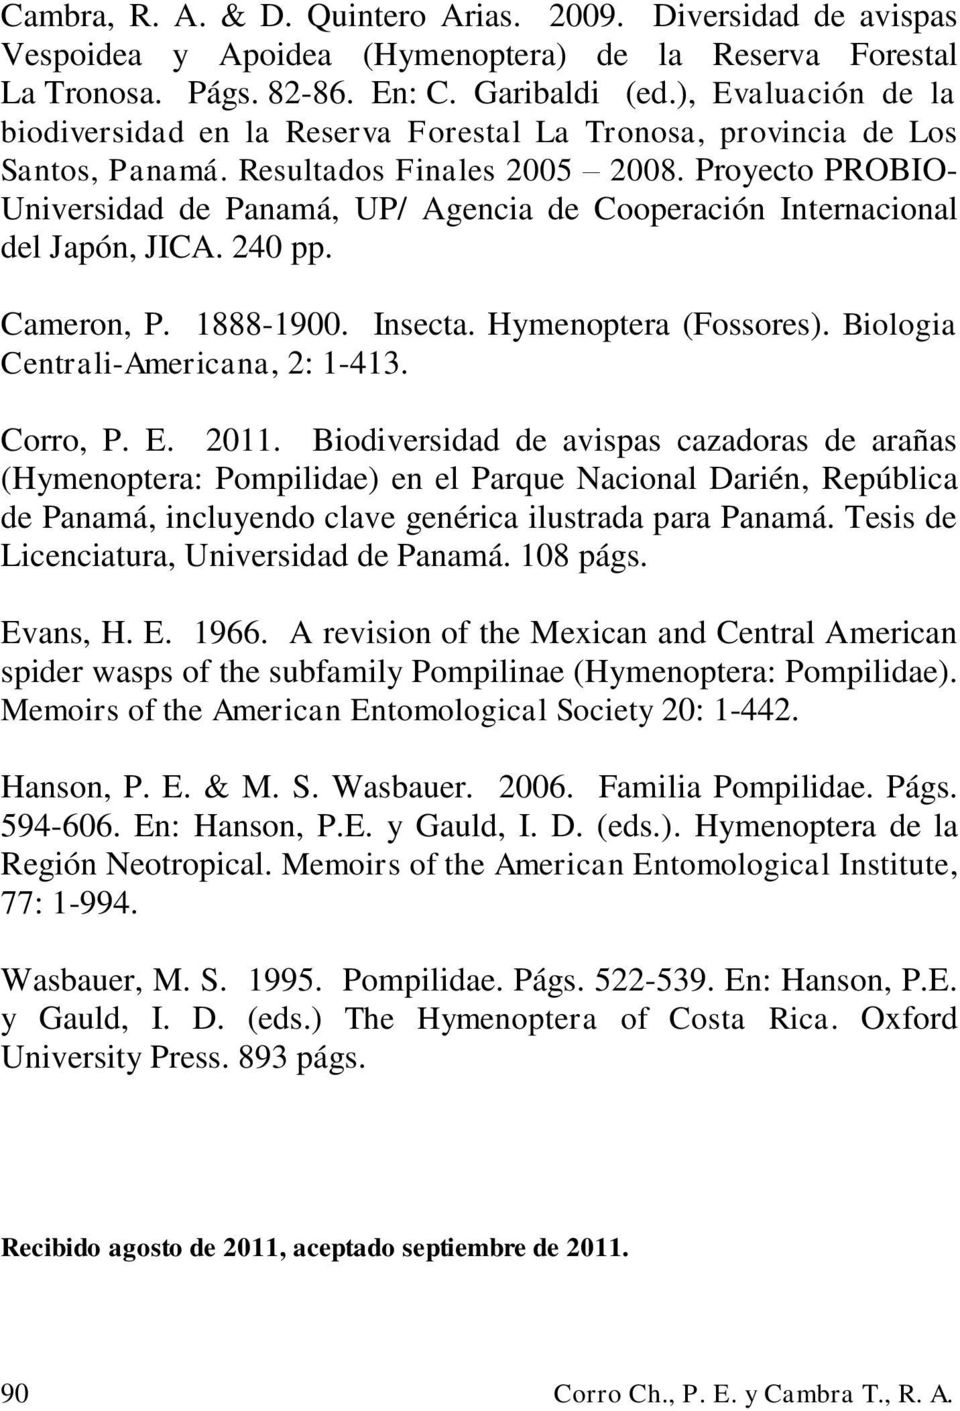 Proyecto PROBIO- Universidad de Panamá, UP/ Agencia de Cooperación Internacional del Japón, JICA. 240 pp. Cameron, P. 1888-1900. Insecta. Hymenoptera (Fossores). Biologia Centrali-Americana, 2: 1-413.